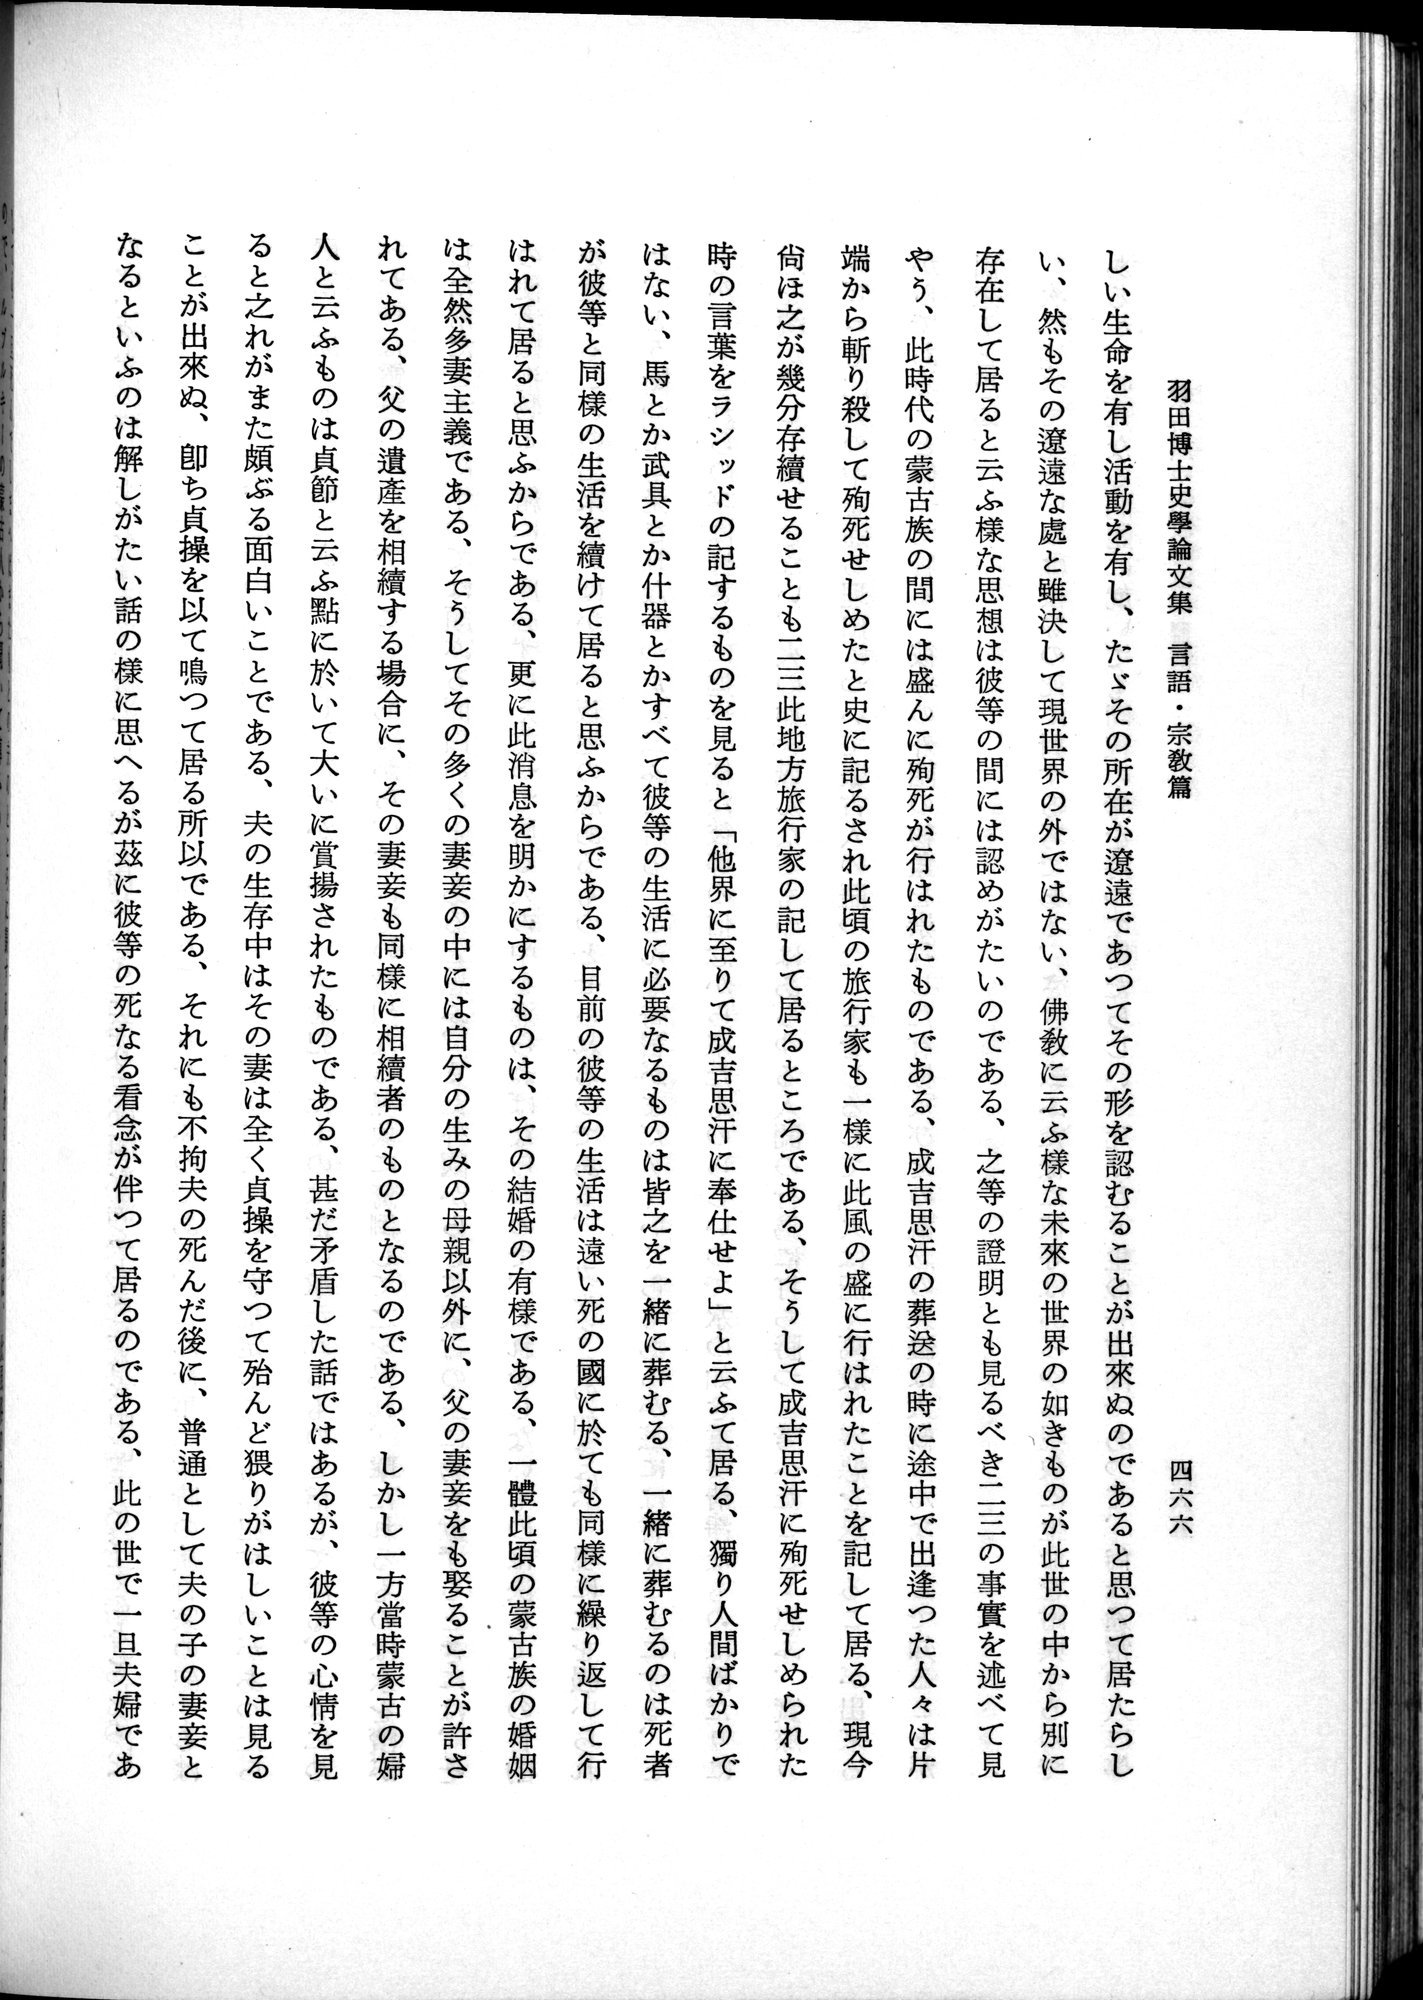 羽田博士史学論文集 : vol.2 / Page 528 (Grayscale High Resolution Image)